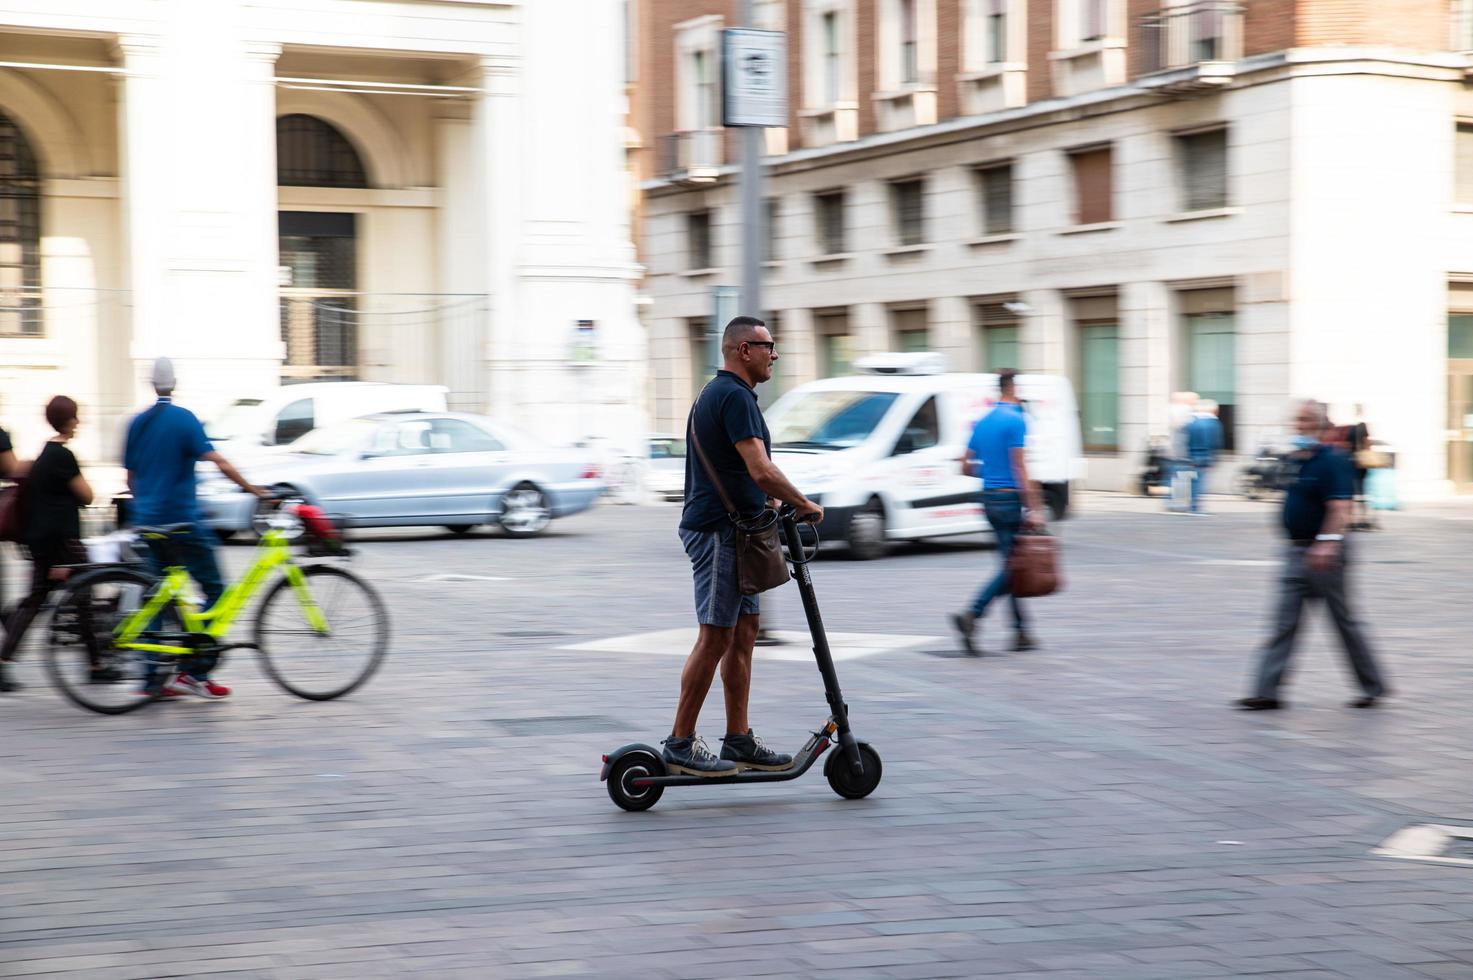 Terni, Italien, 29.09.2021 - Person auf einem Roller in der Stadt foto